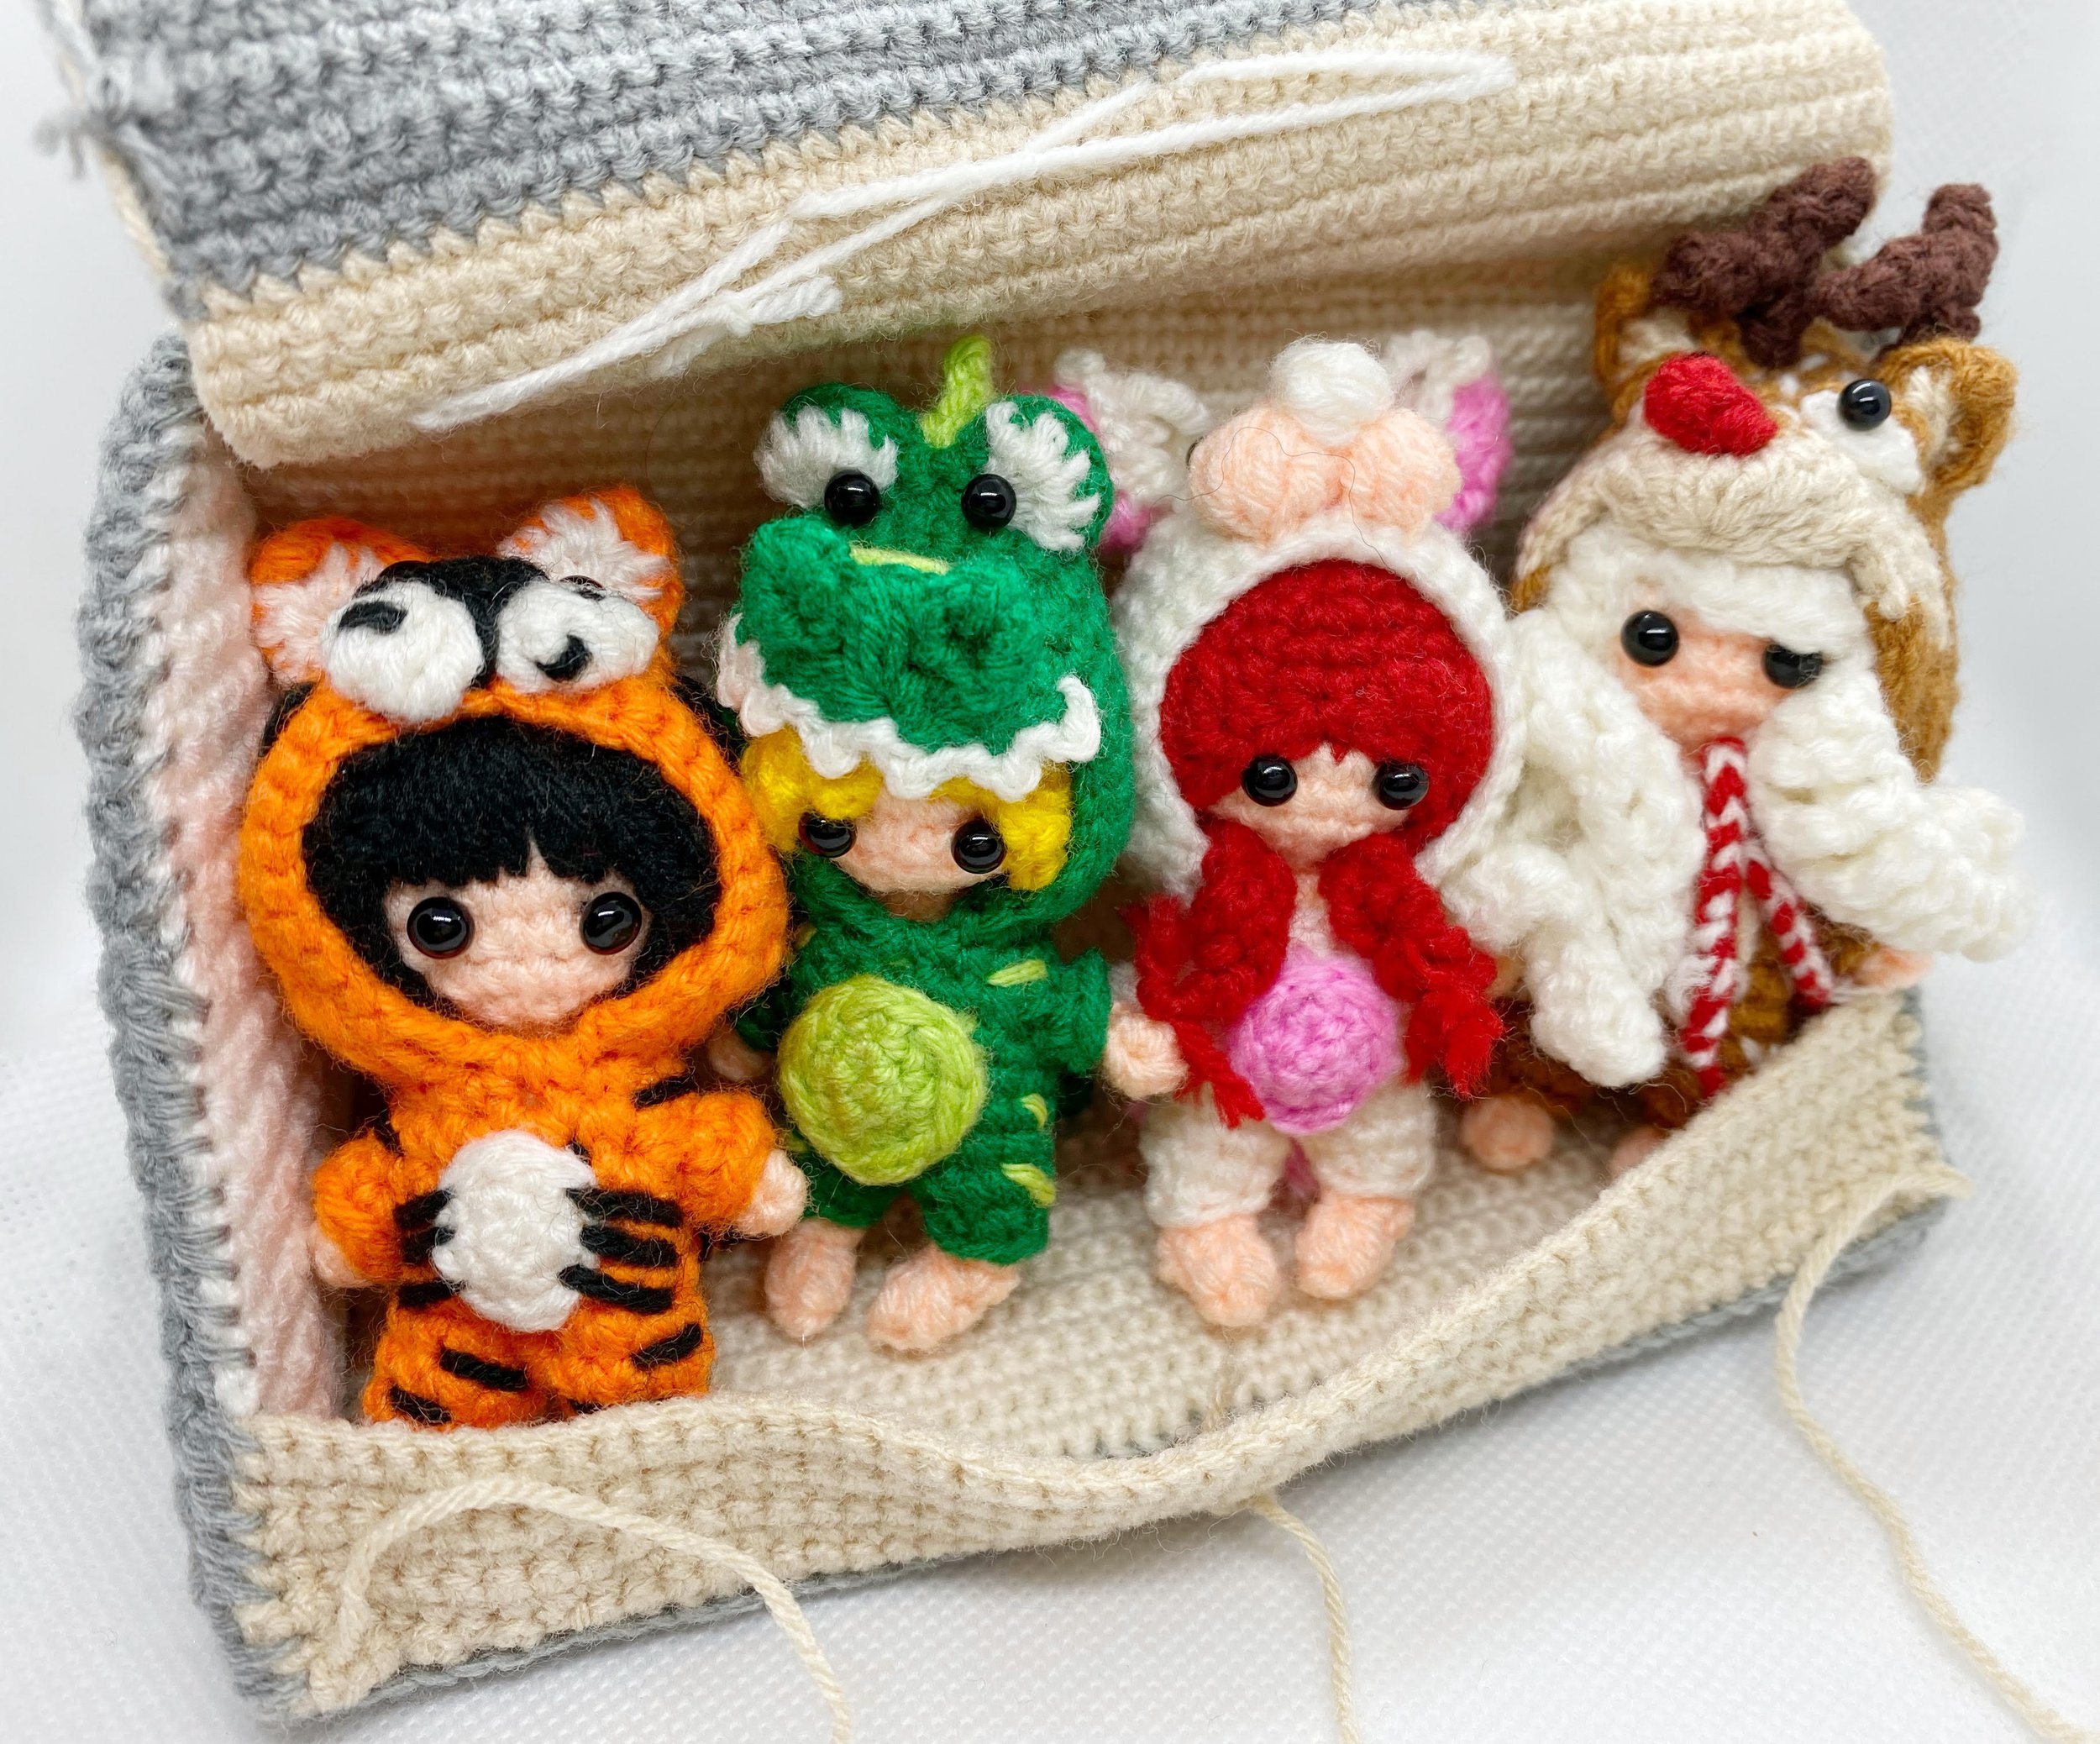 Anime crochet  Kawaii crochet Fun crochet projects Crochet dolls